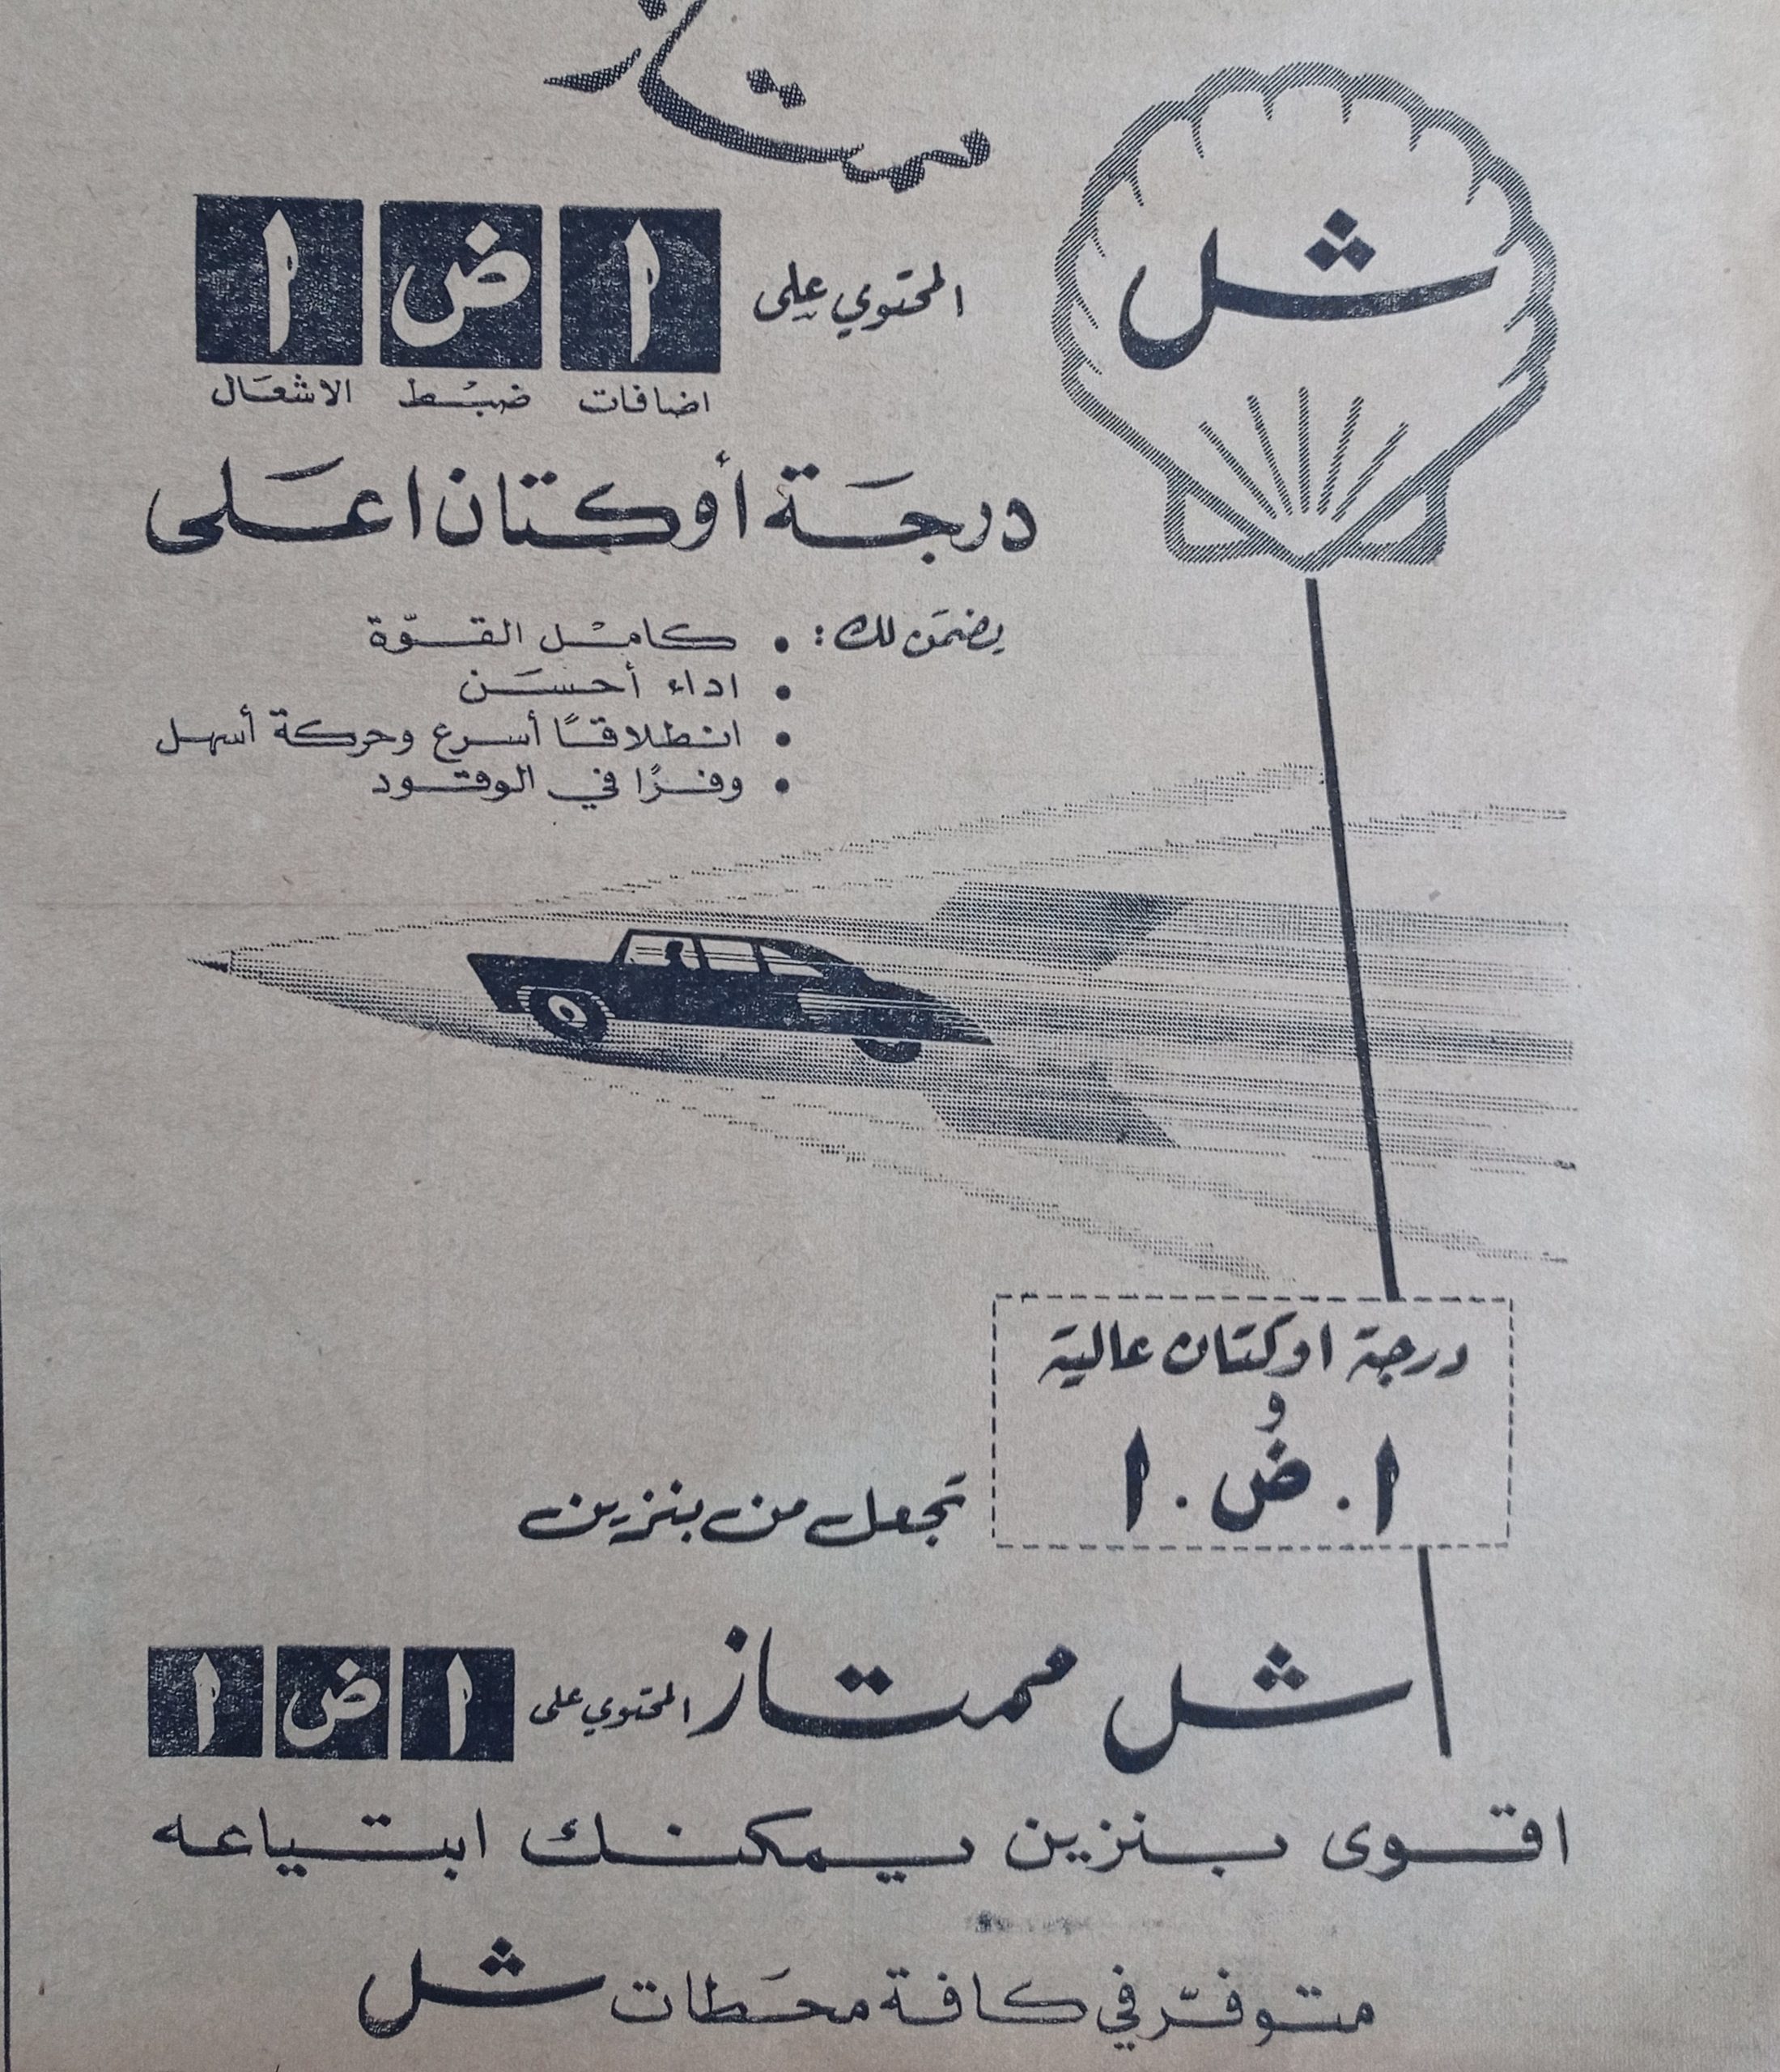 التاريخ السوري المعاصر - إعلان عن بنزين شل الممتاز في حلب عام 1956